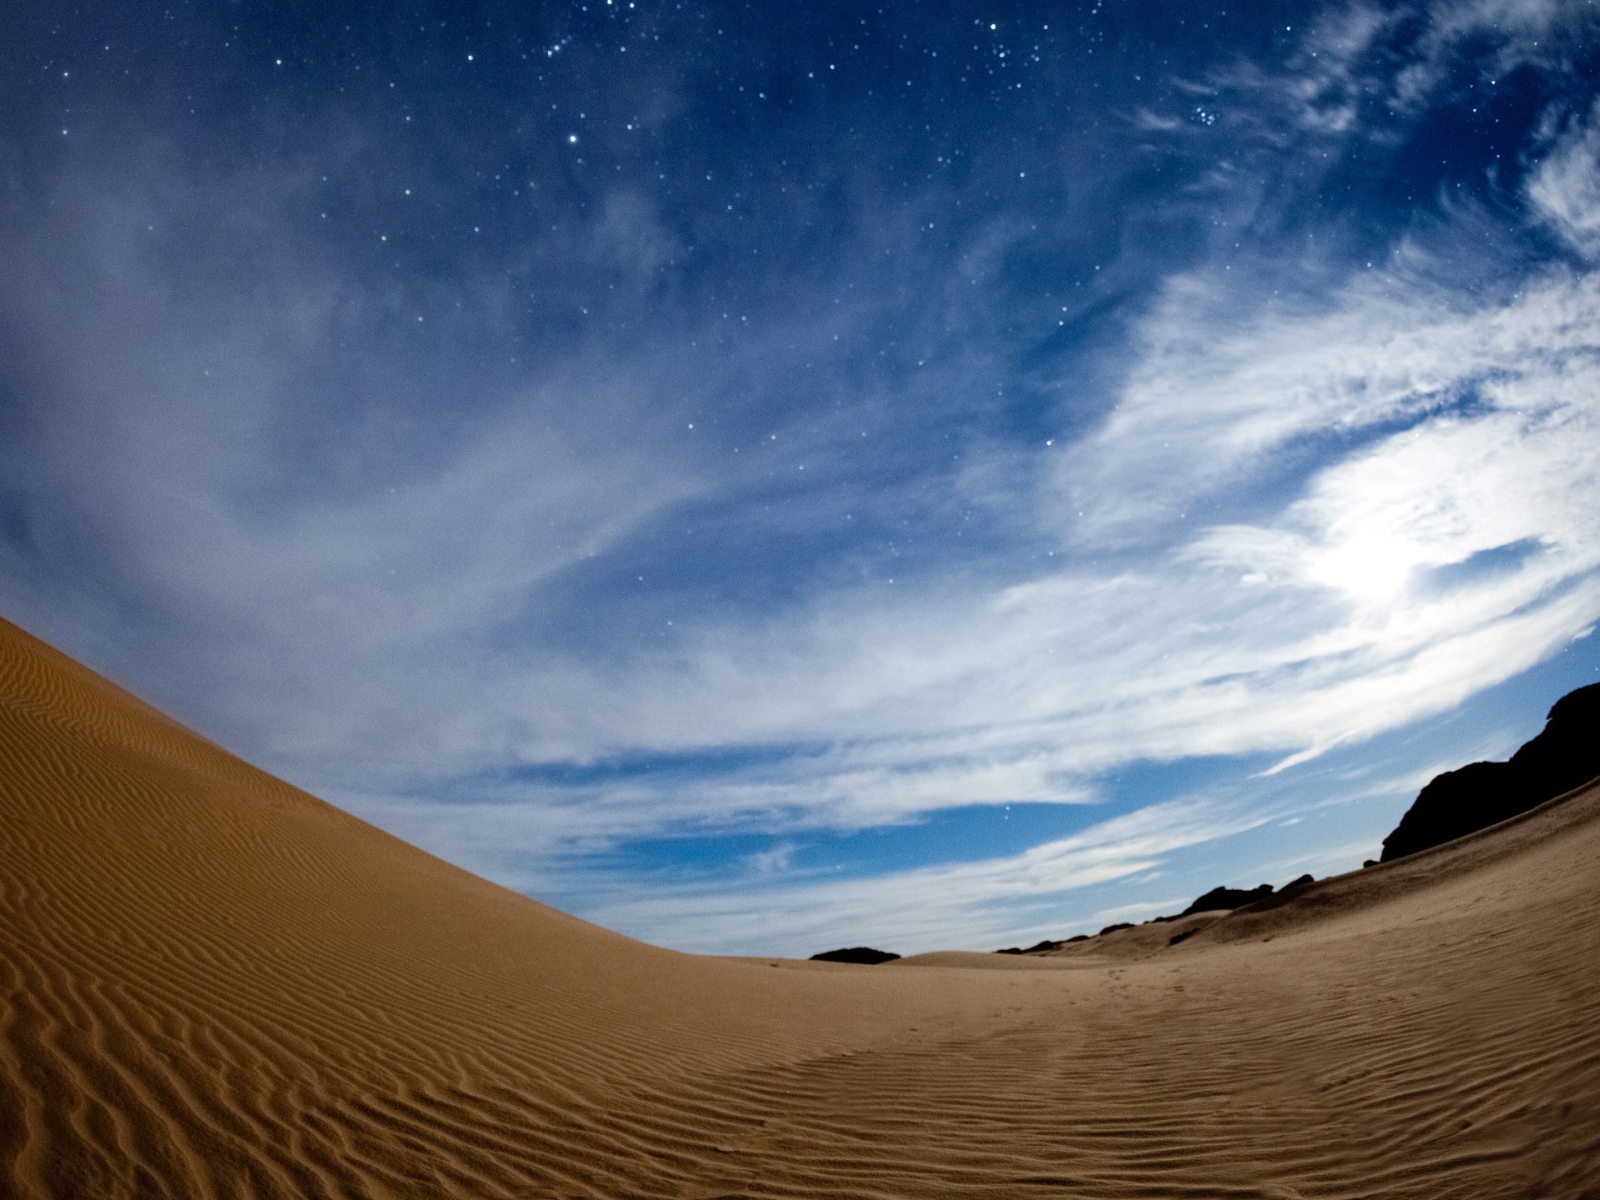 Волнистая песчаная дюна под красивым небом в сумерках 